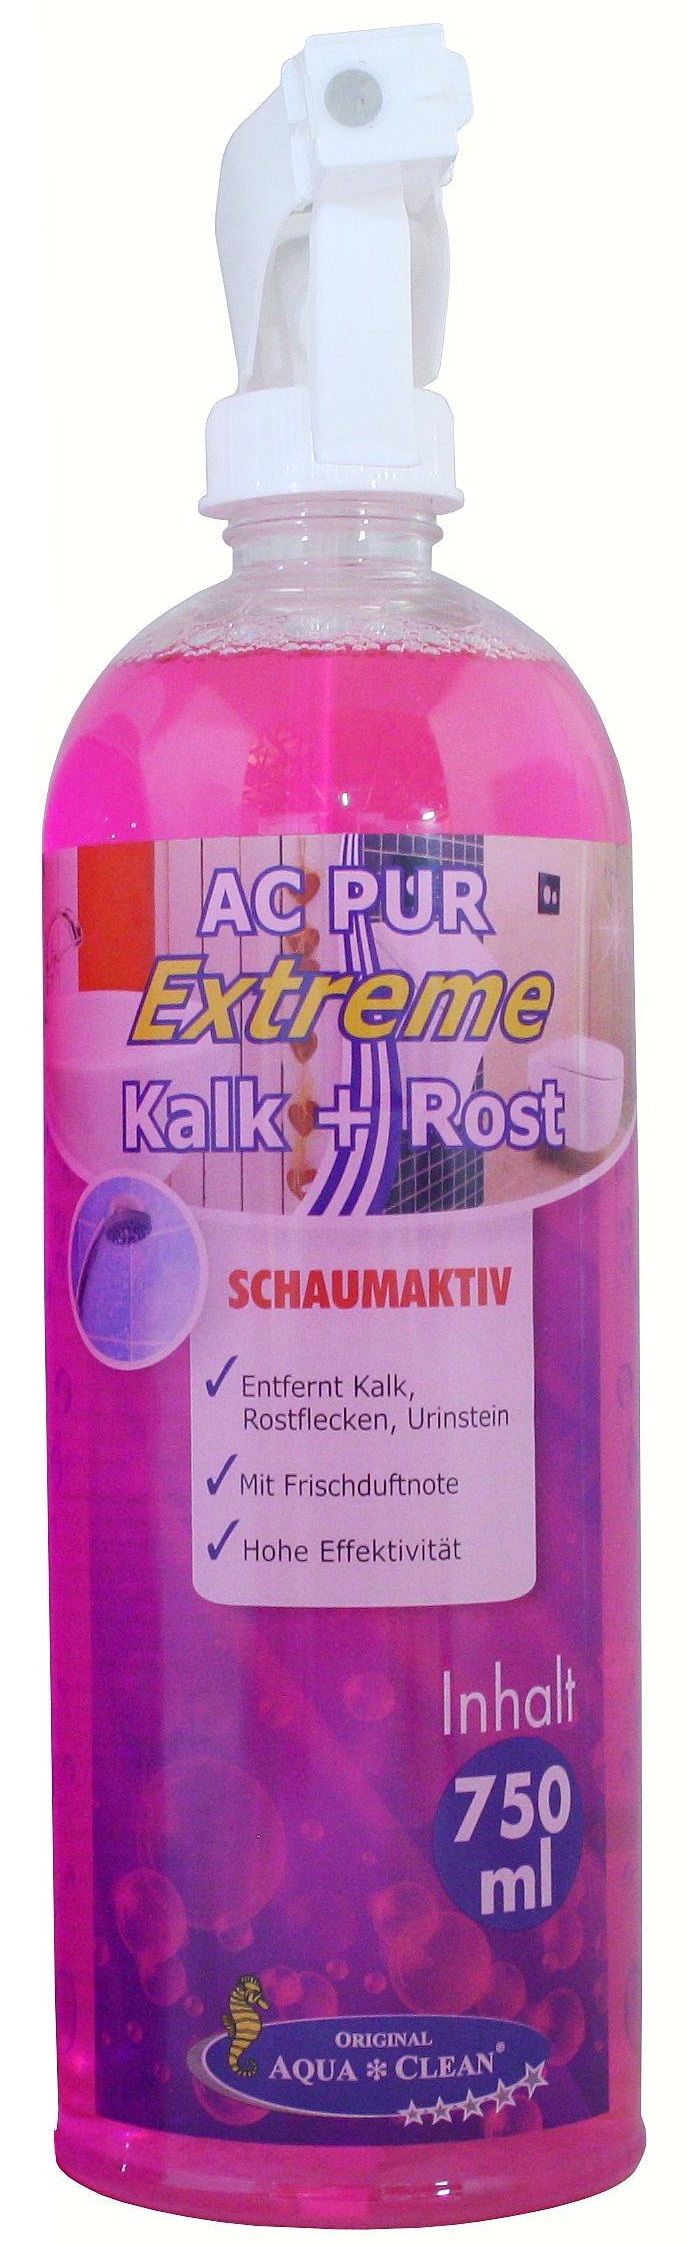 AQUA CLEAN PUR Extreme gegen Kalk, Rost & Urinstein 750 ml